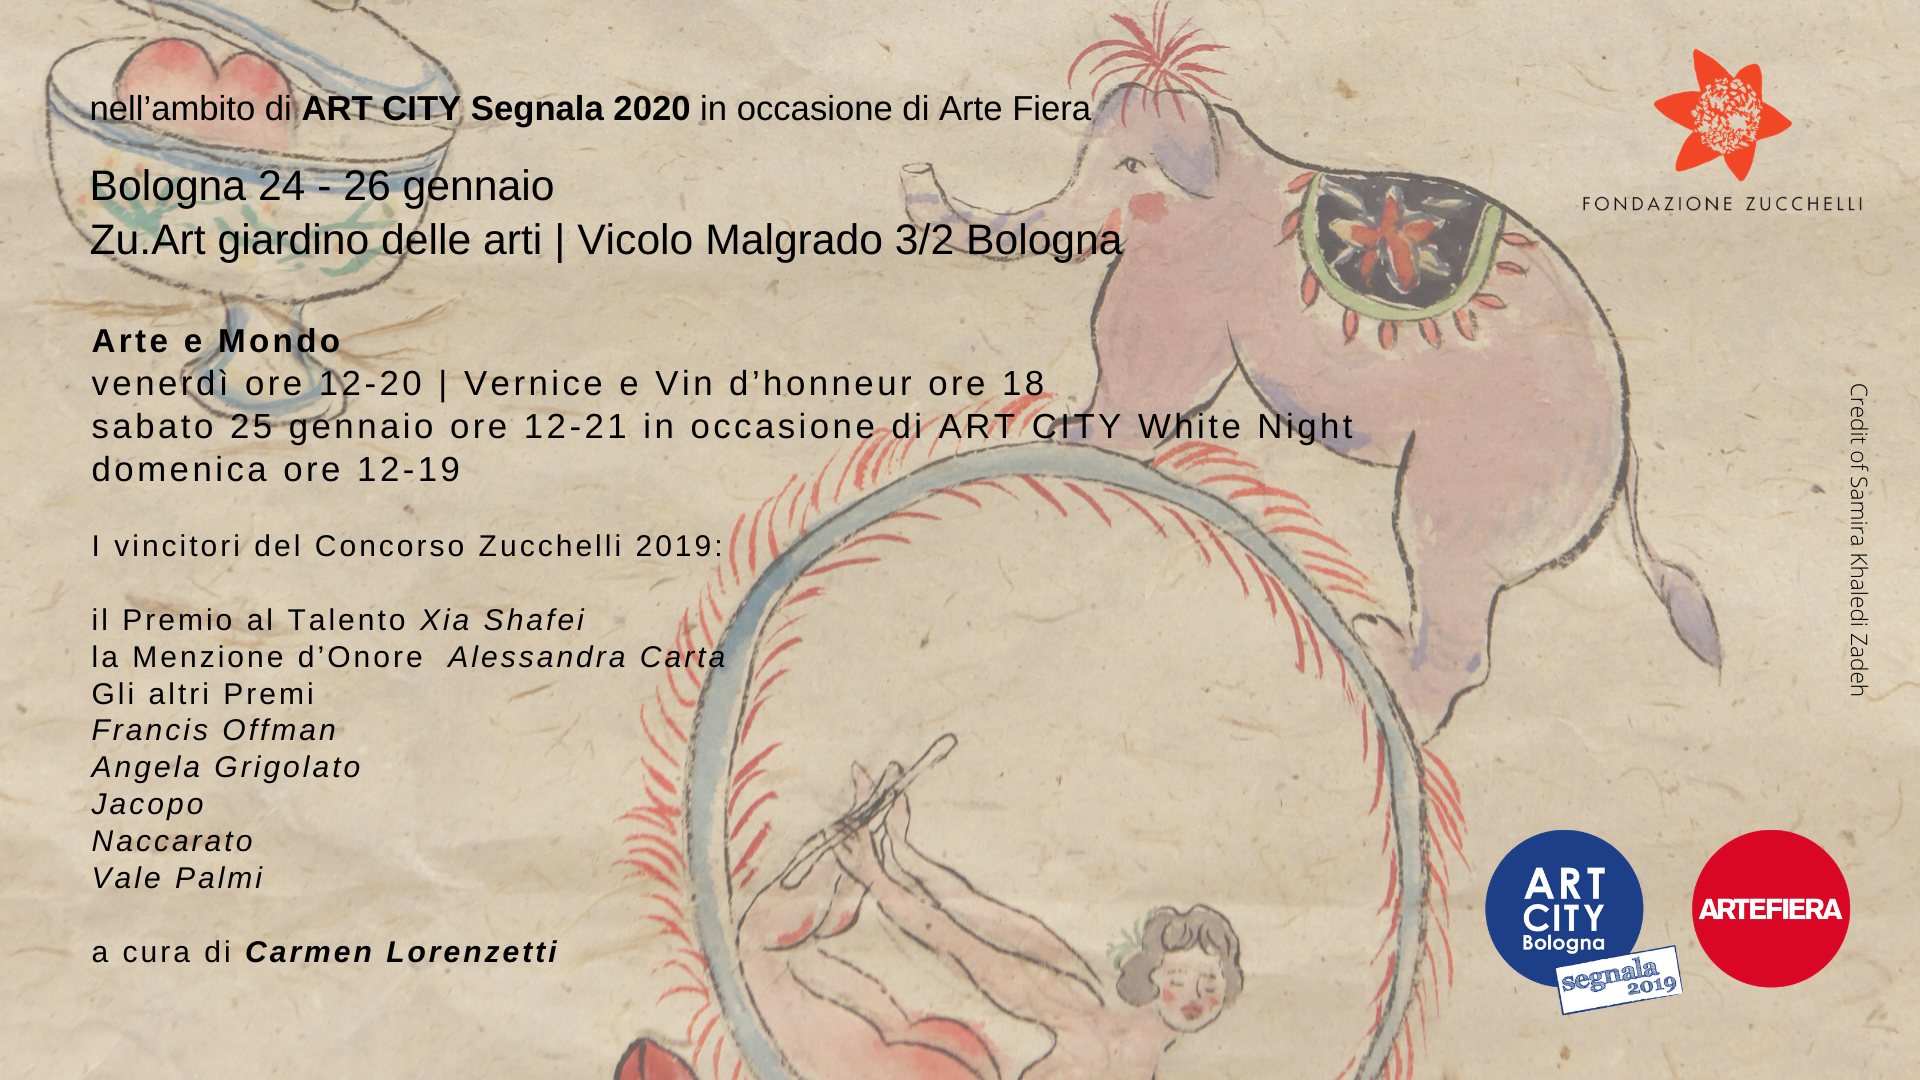 Mostra Arte e Mondo - a cura di Carmen Lorenzetti - ART CITY 2020 Bologna - Fondazione Zucchelli